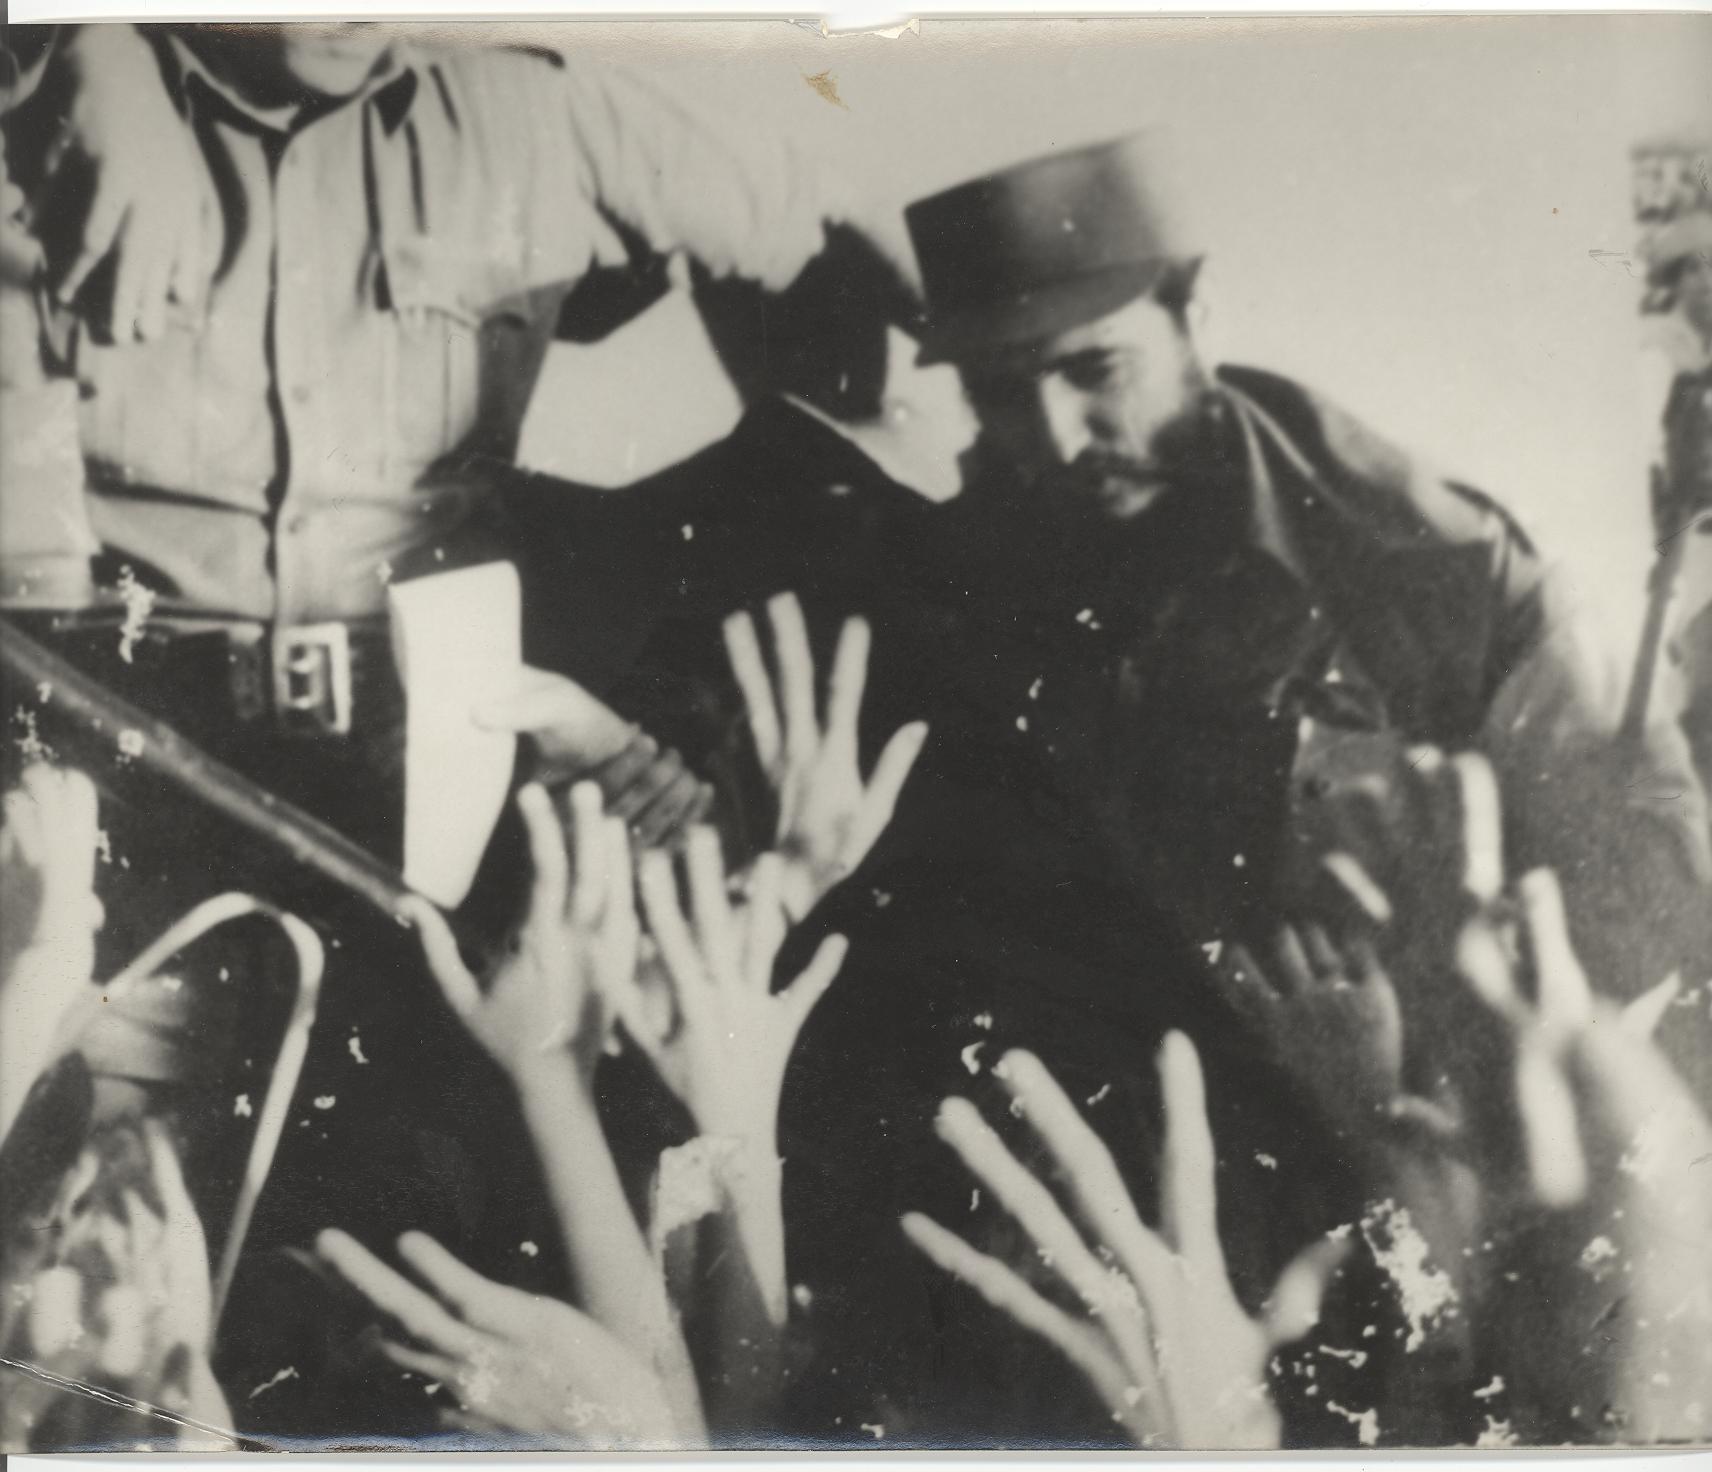 Paso de Fidel por Ciego en caravana el 5 de enero de 1959